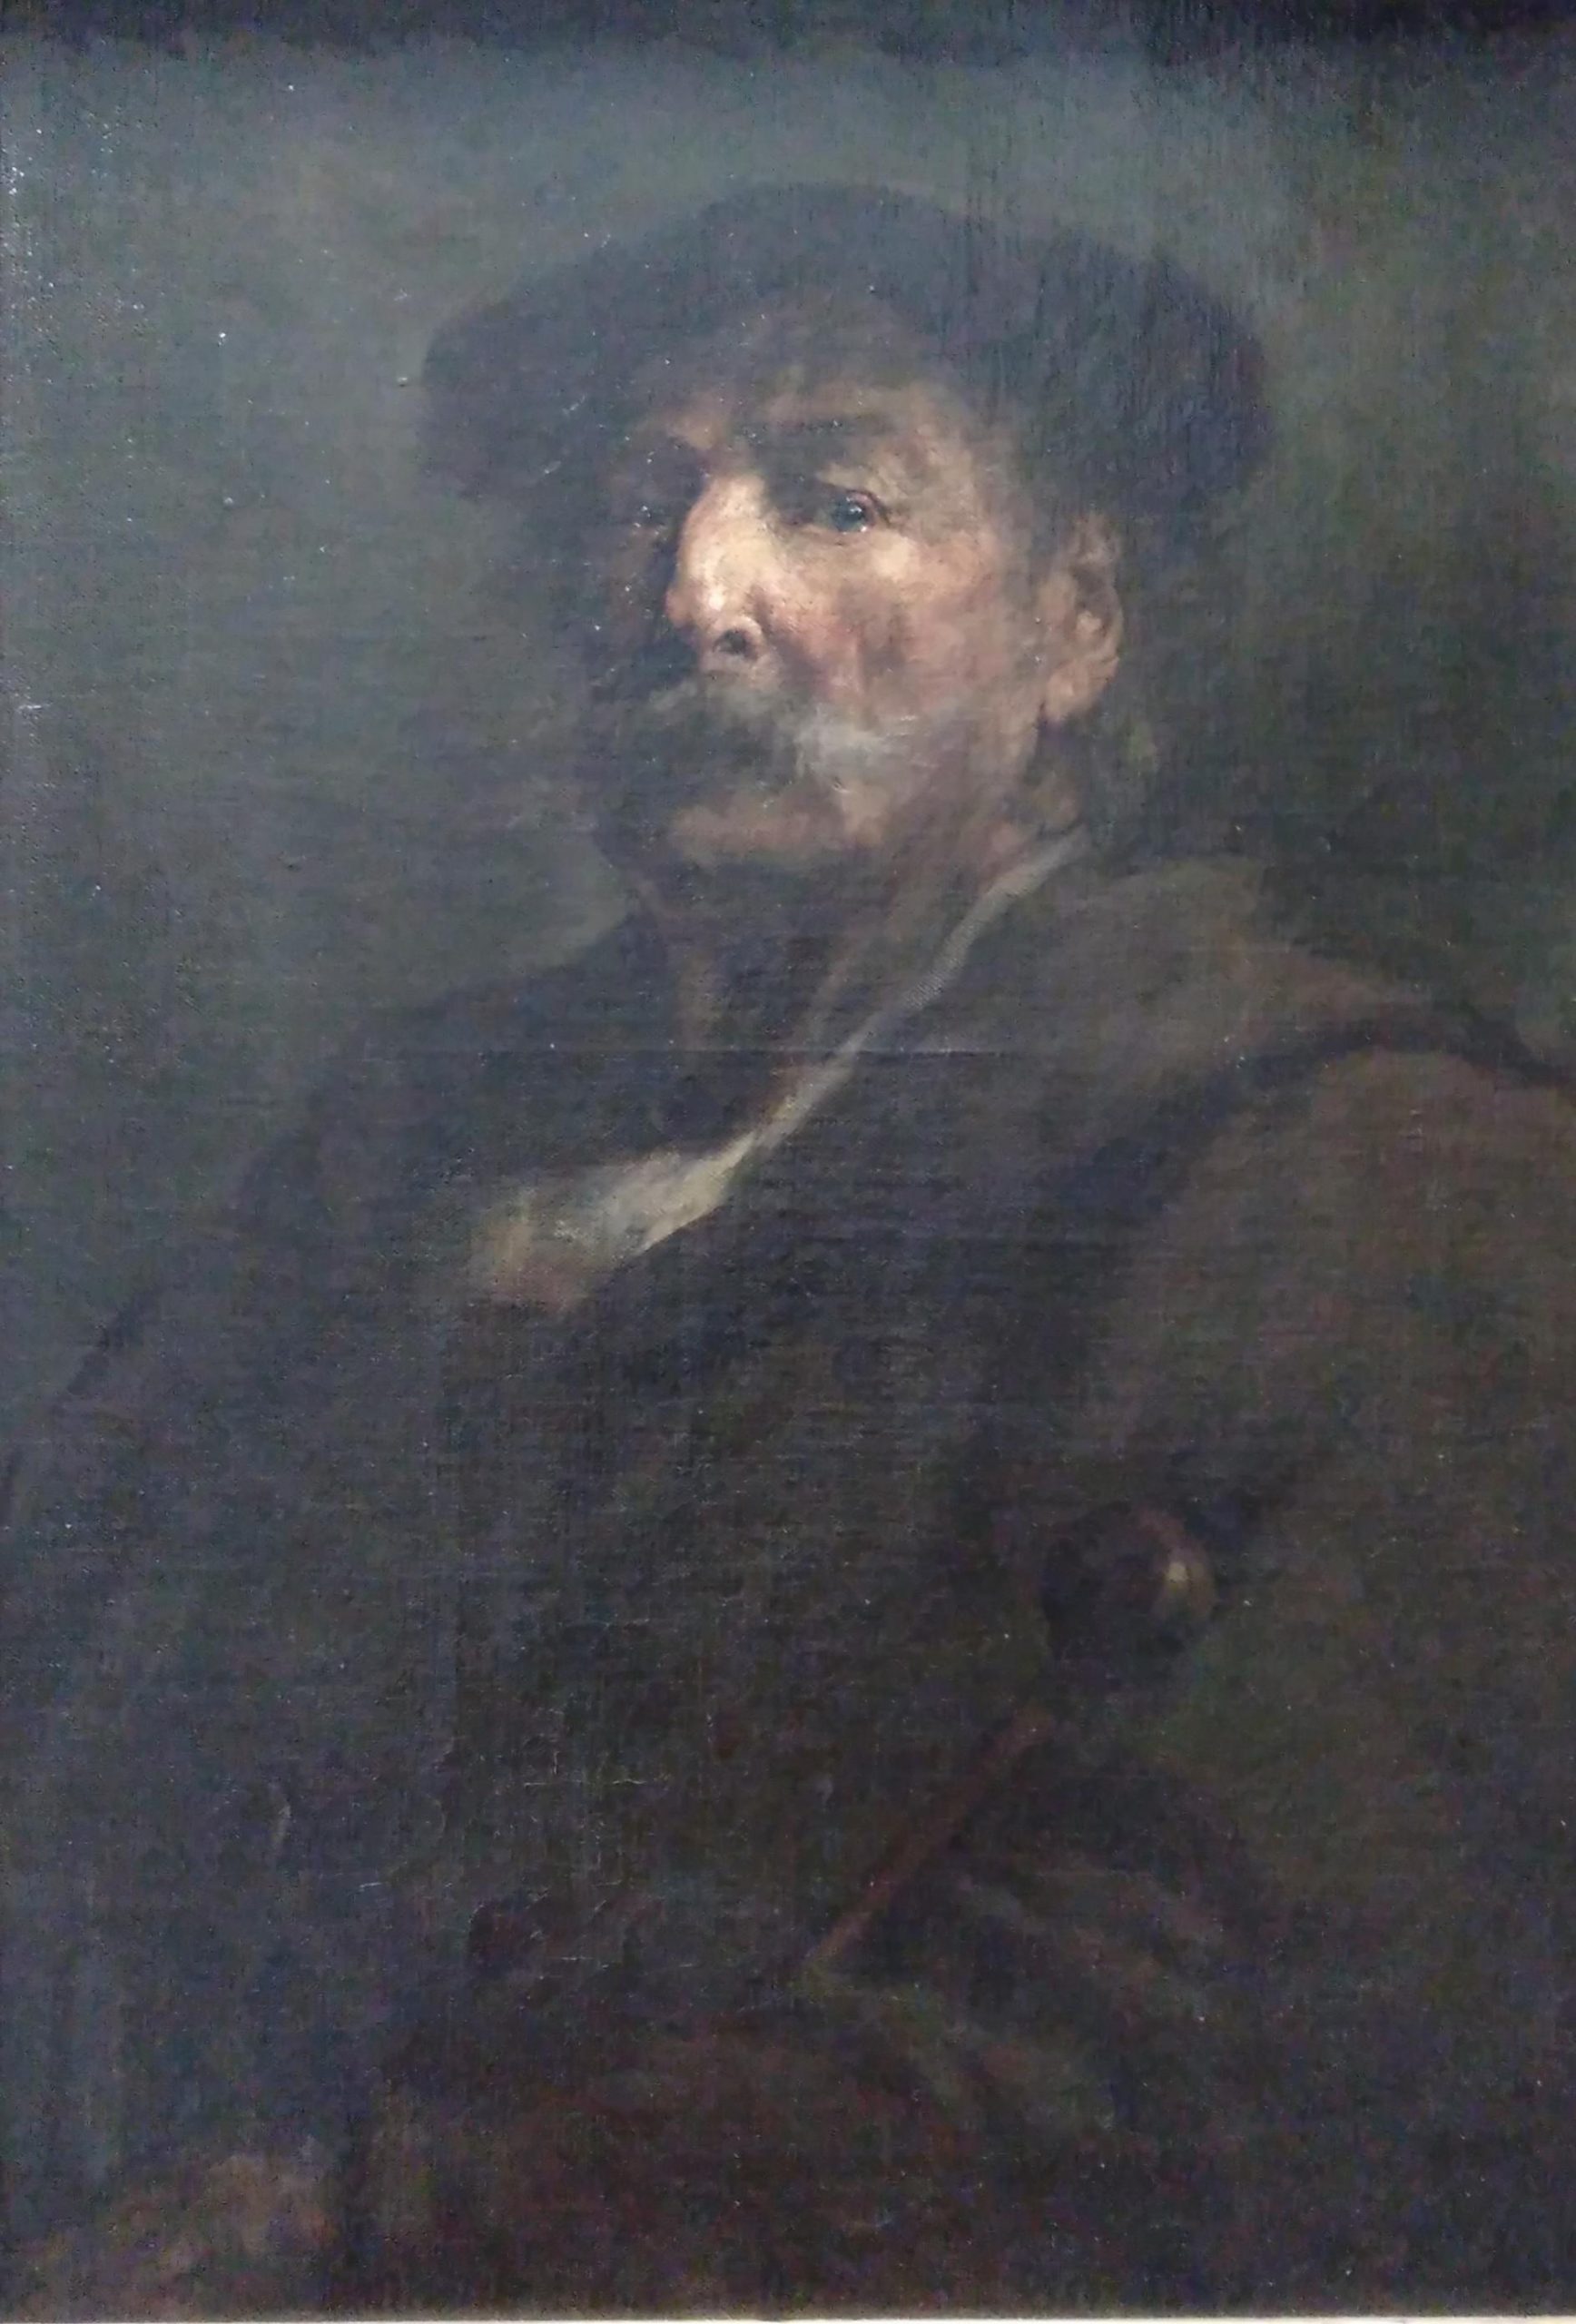 "Autoportrait" - Théodule Ribot, Musée d'Art et d'Histoire, Colombes © Fatma Alilate